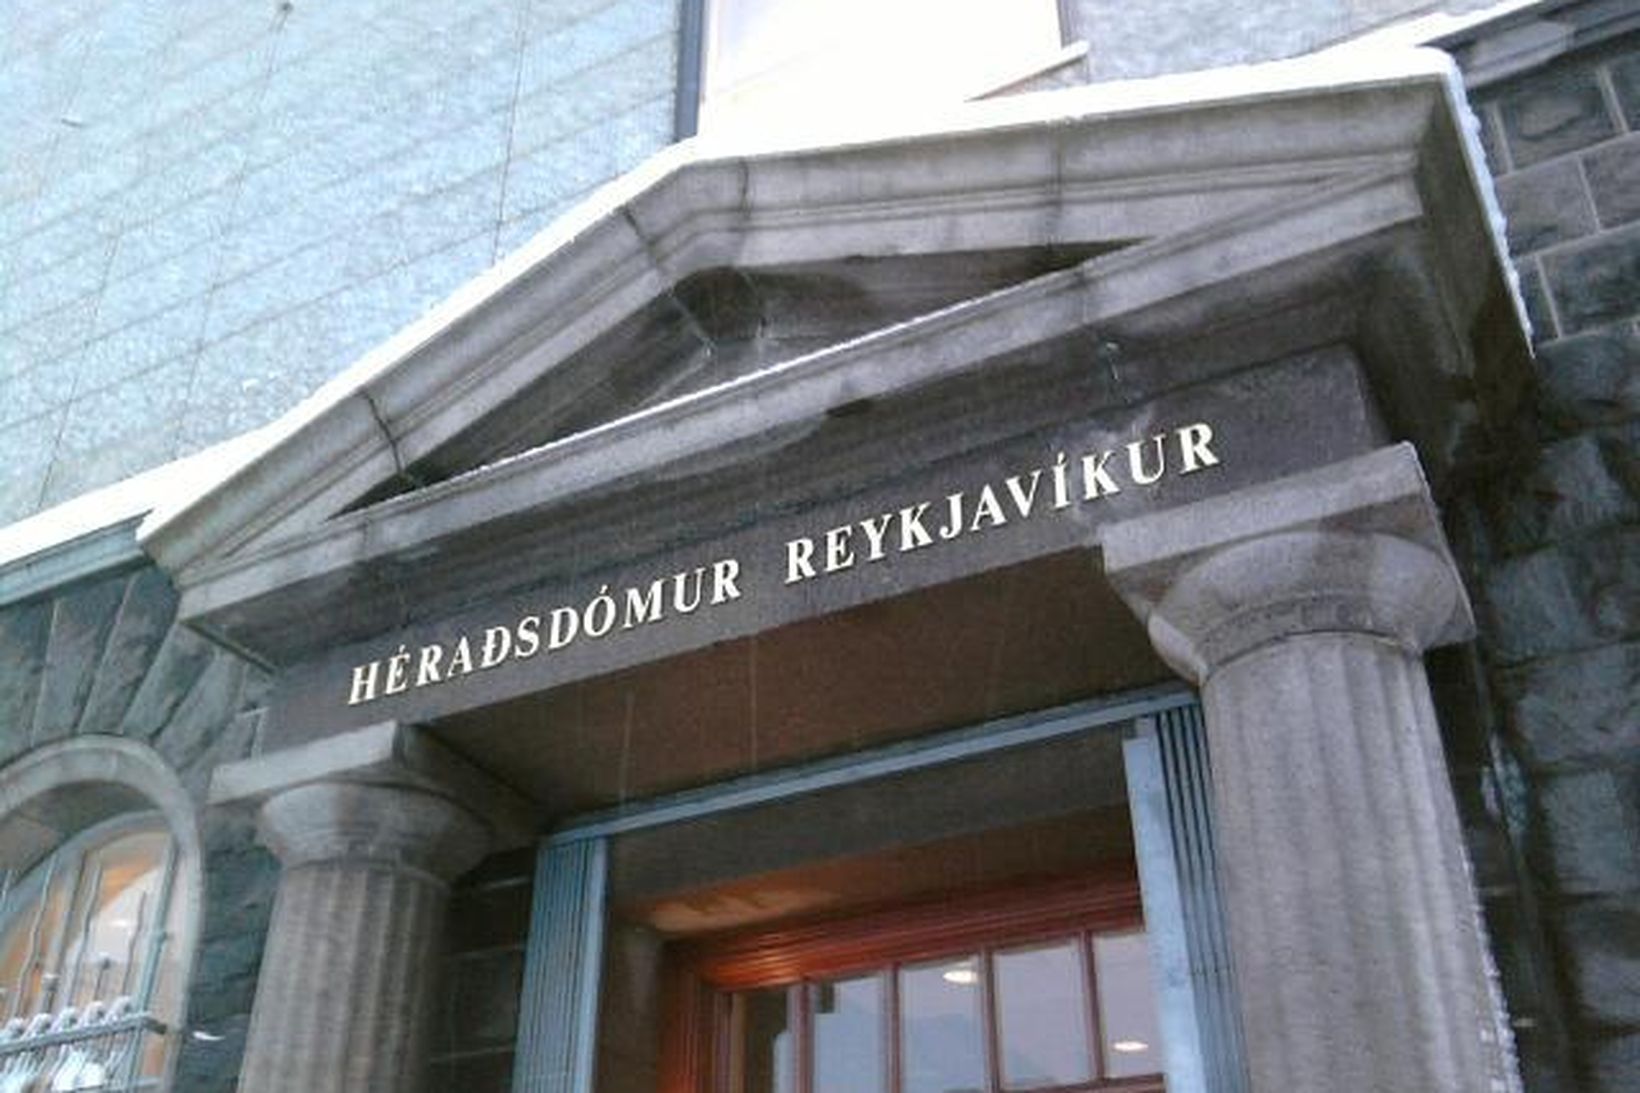 Héraðsdómur Reykjavíkur